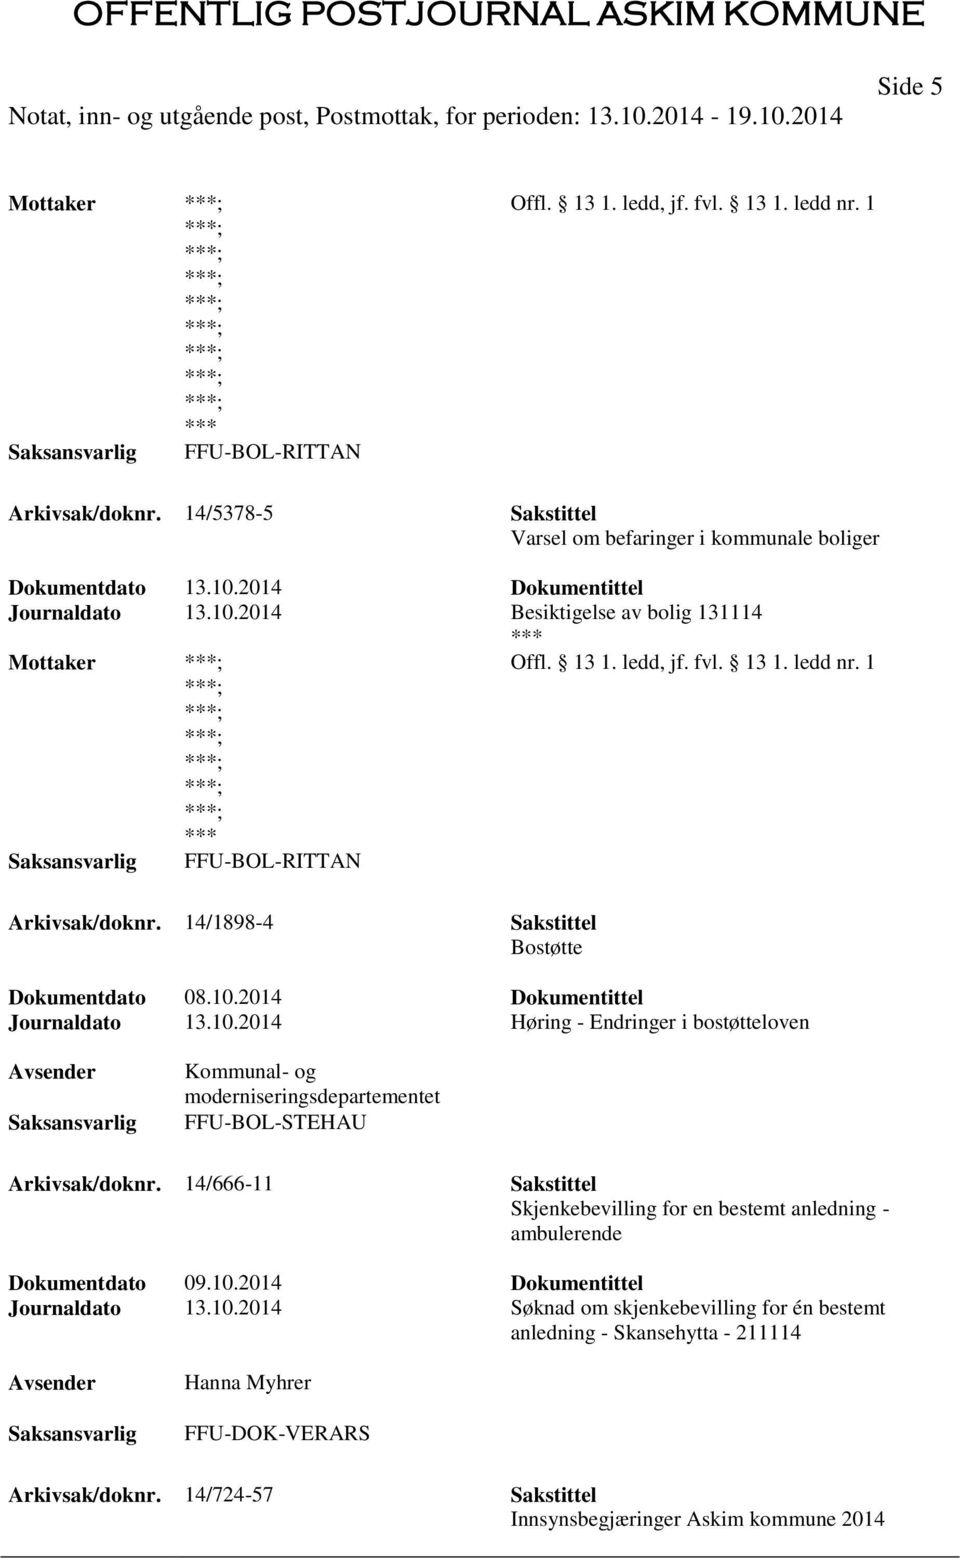 2014 Høring - Endringer i bostøtteloven Kommunal- og moderniseringsdepartementet FFU-BOL-STEHAU Arkivsak/doknr.